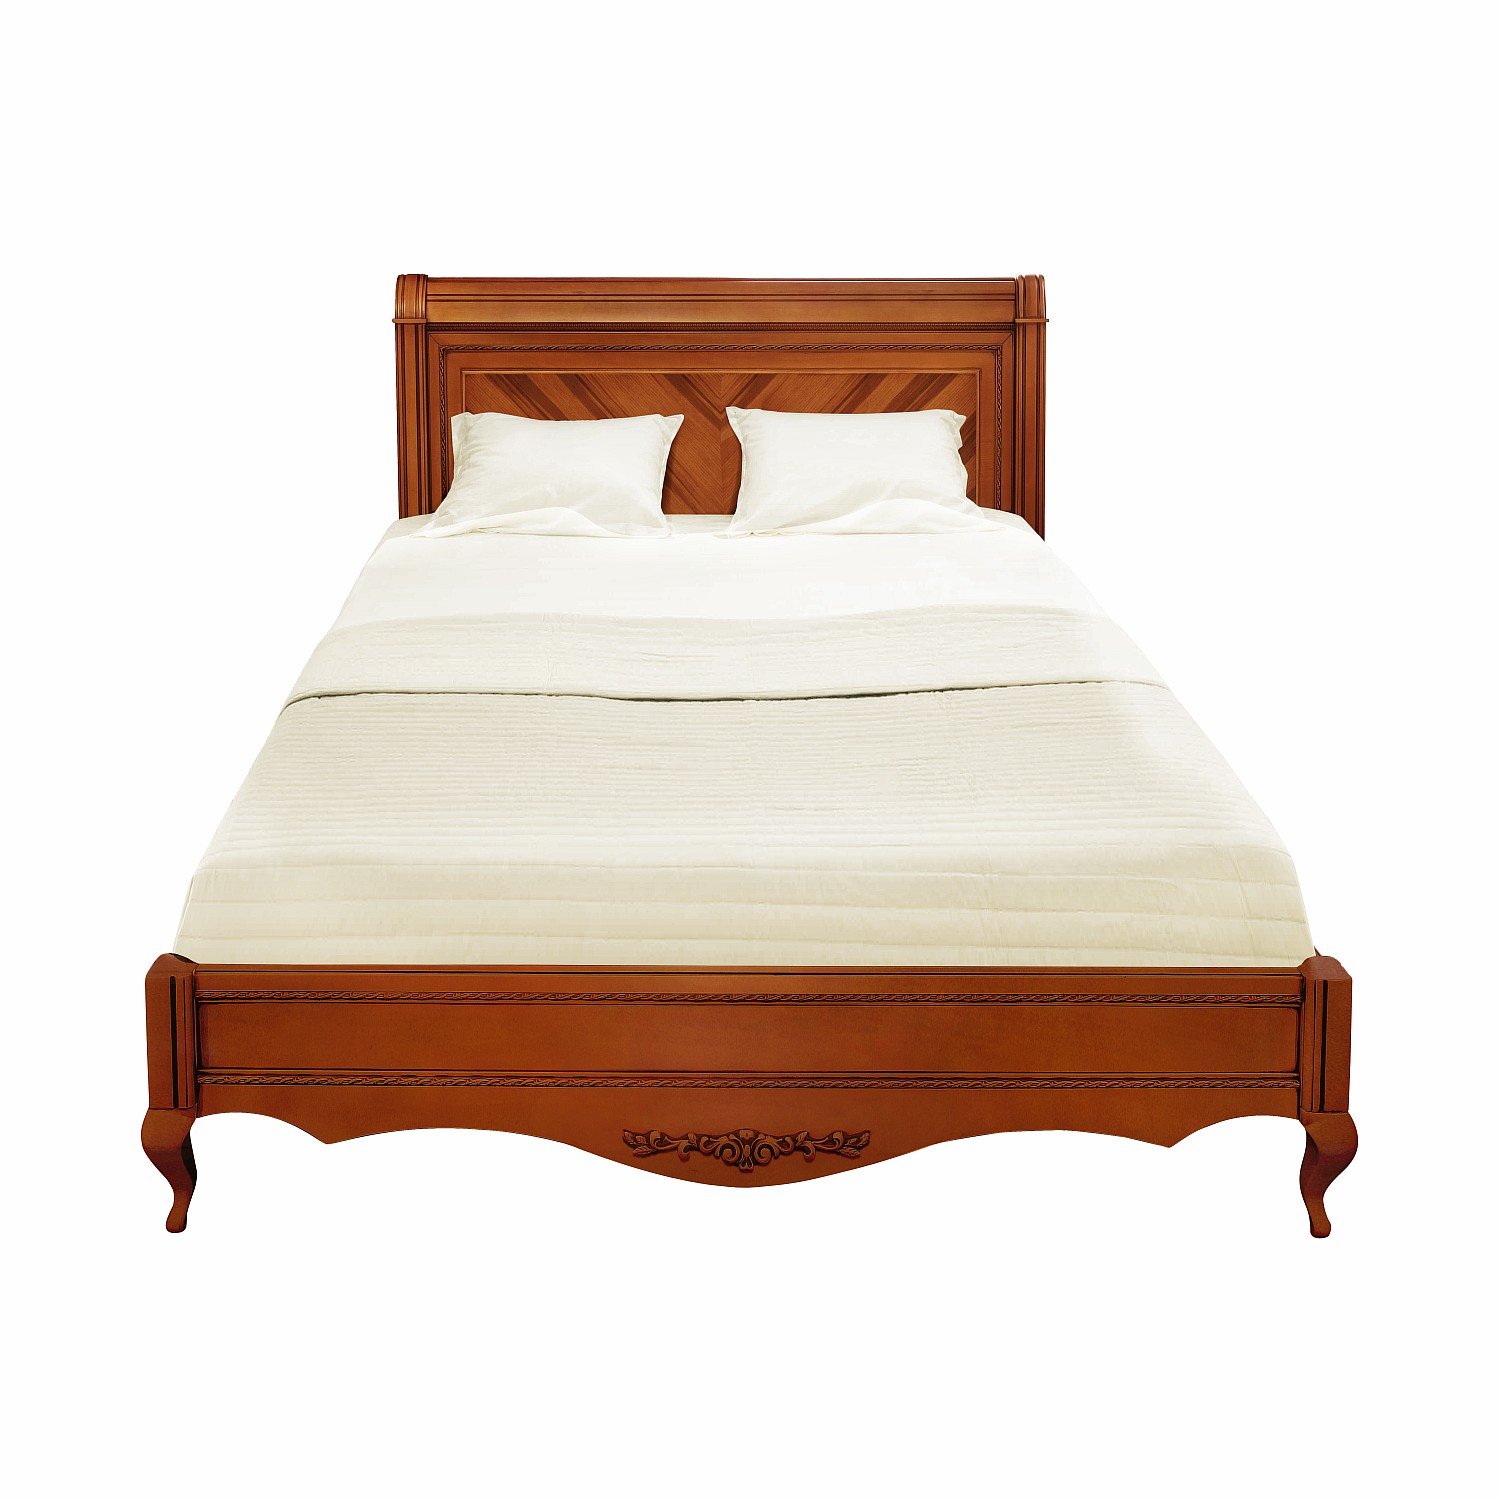 Кровать Timber Неаполь, двуспальная 160x200 см цвет: янтарь (T-536)T-536